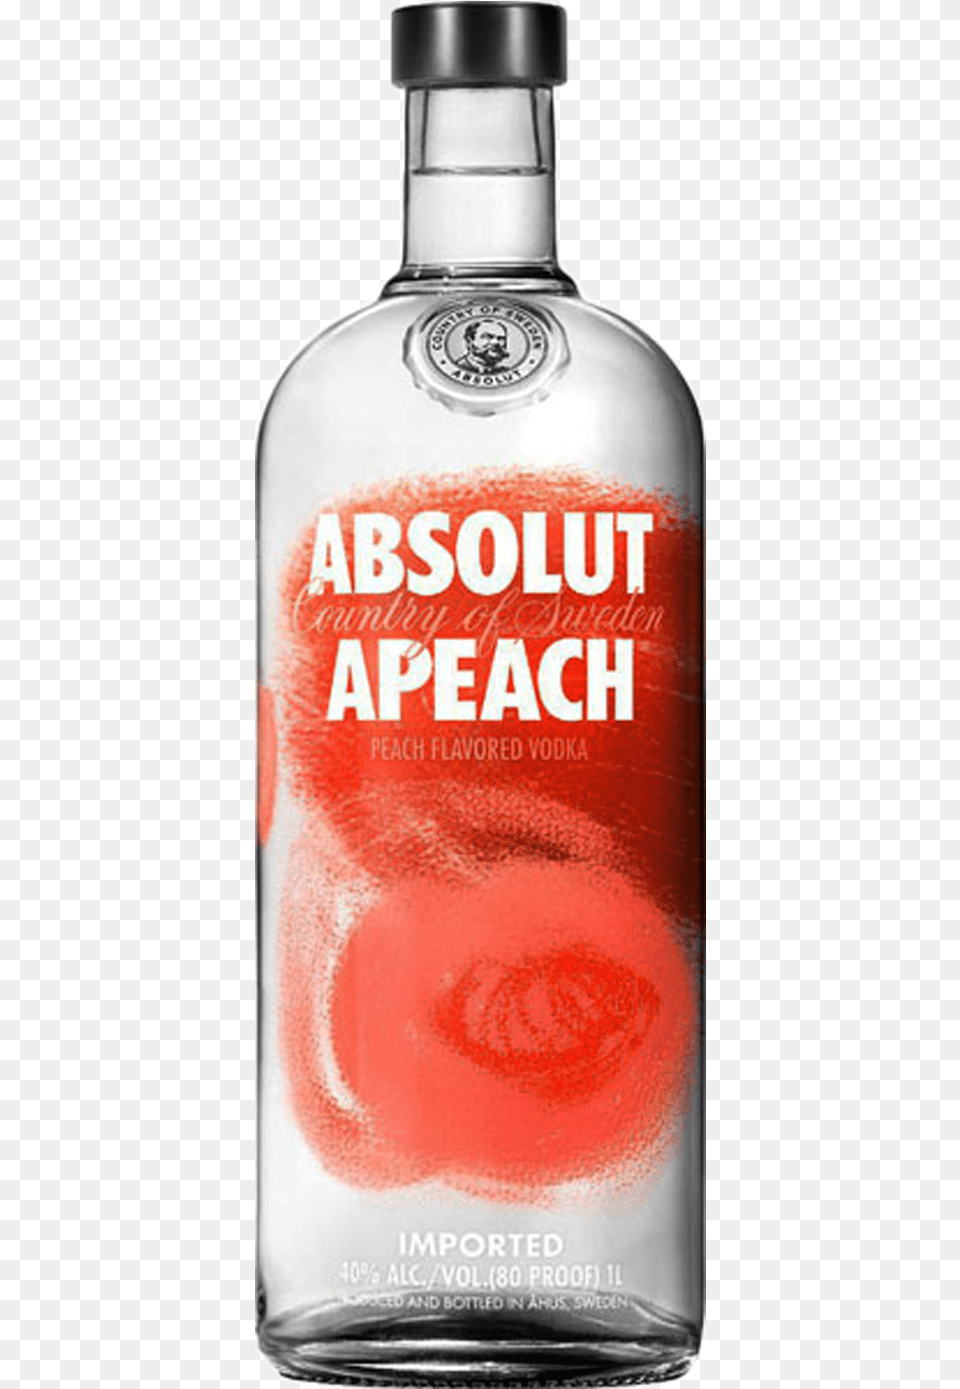 Absolut Apeach 1 Ltr Absolut Vodka, Alcohol, Beverage, Liquor, Bottle Png Image